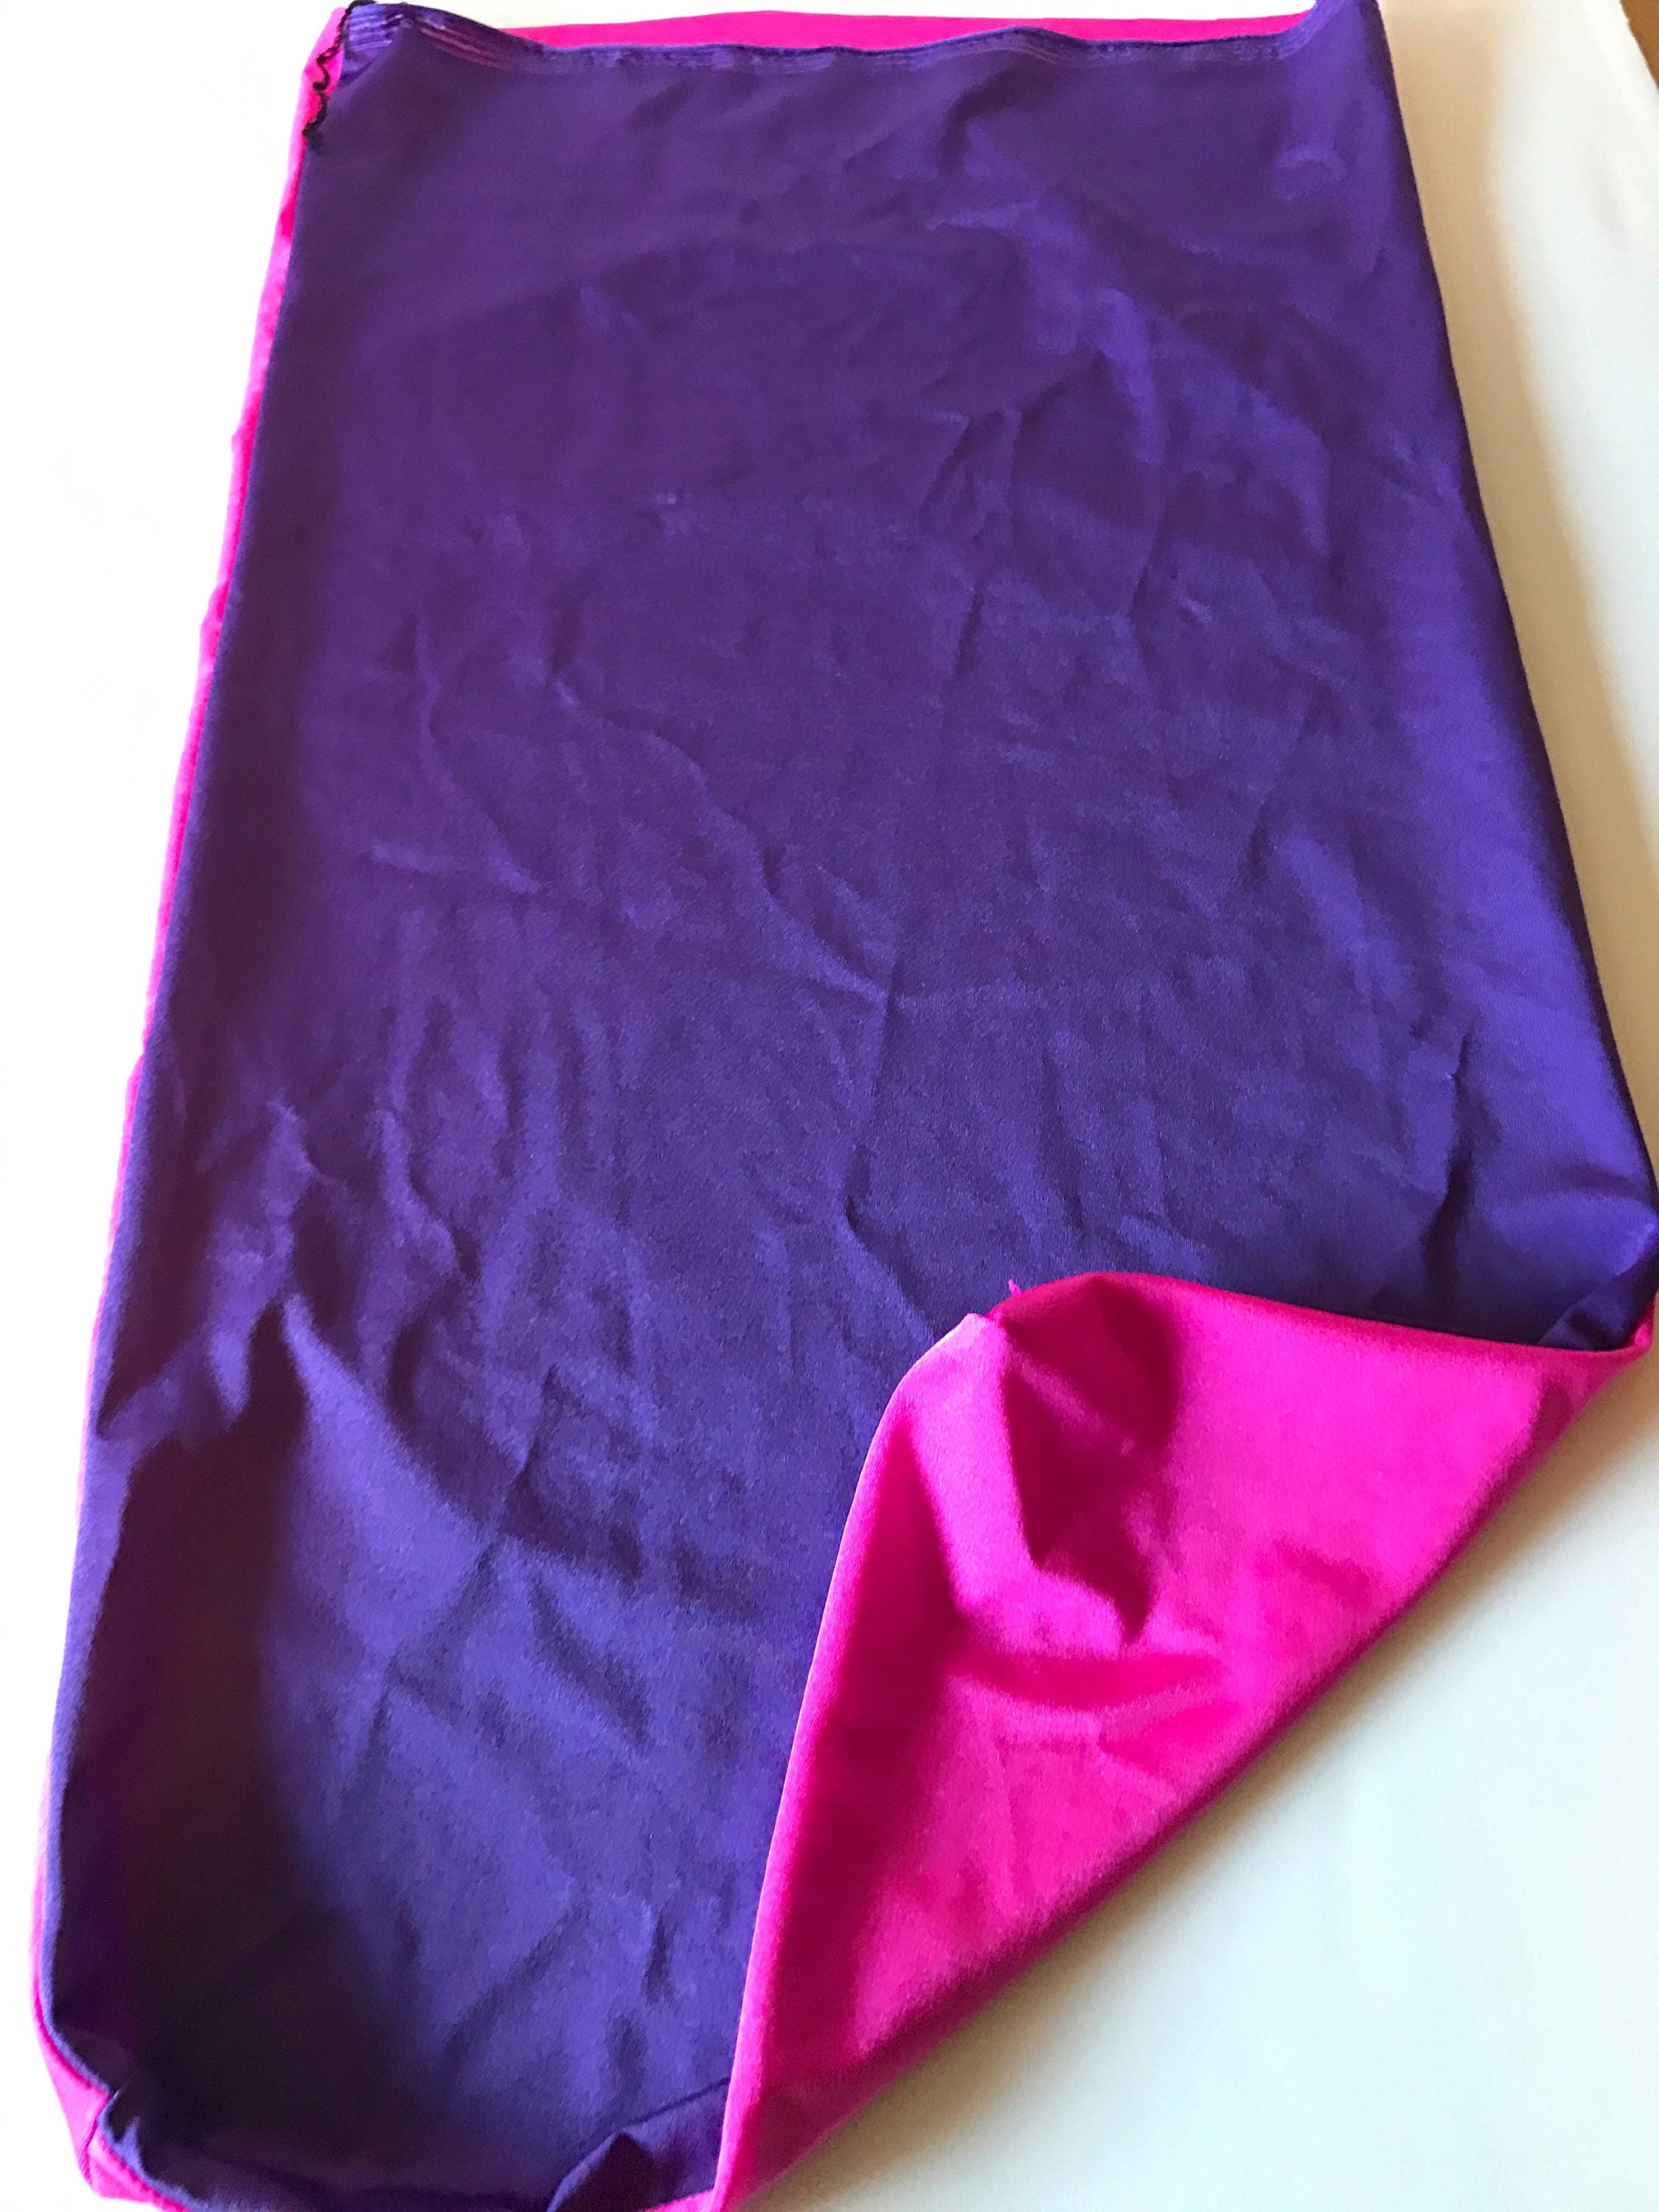 Sensory sack stretchy bag body sleeve Lycra spandex | Etsy